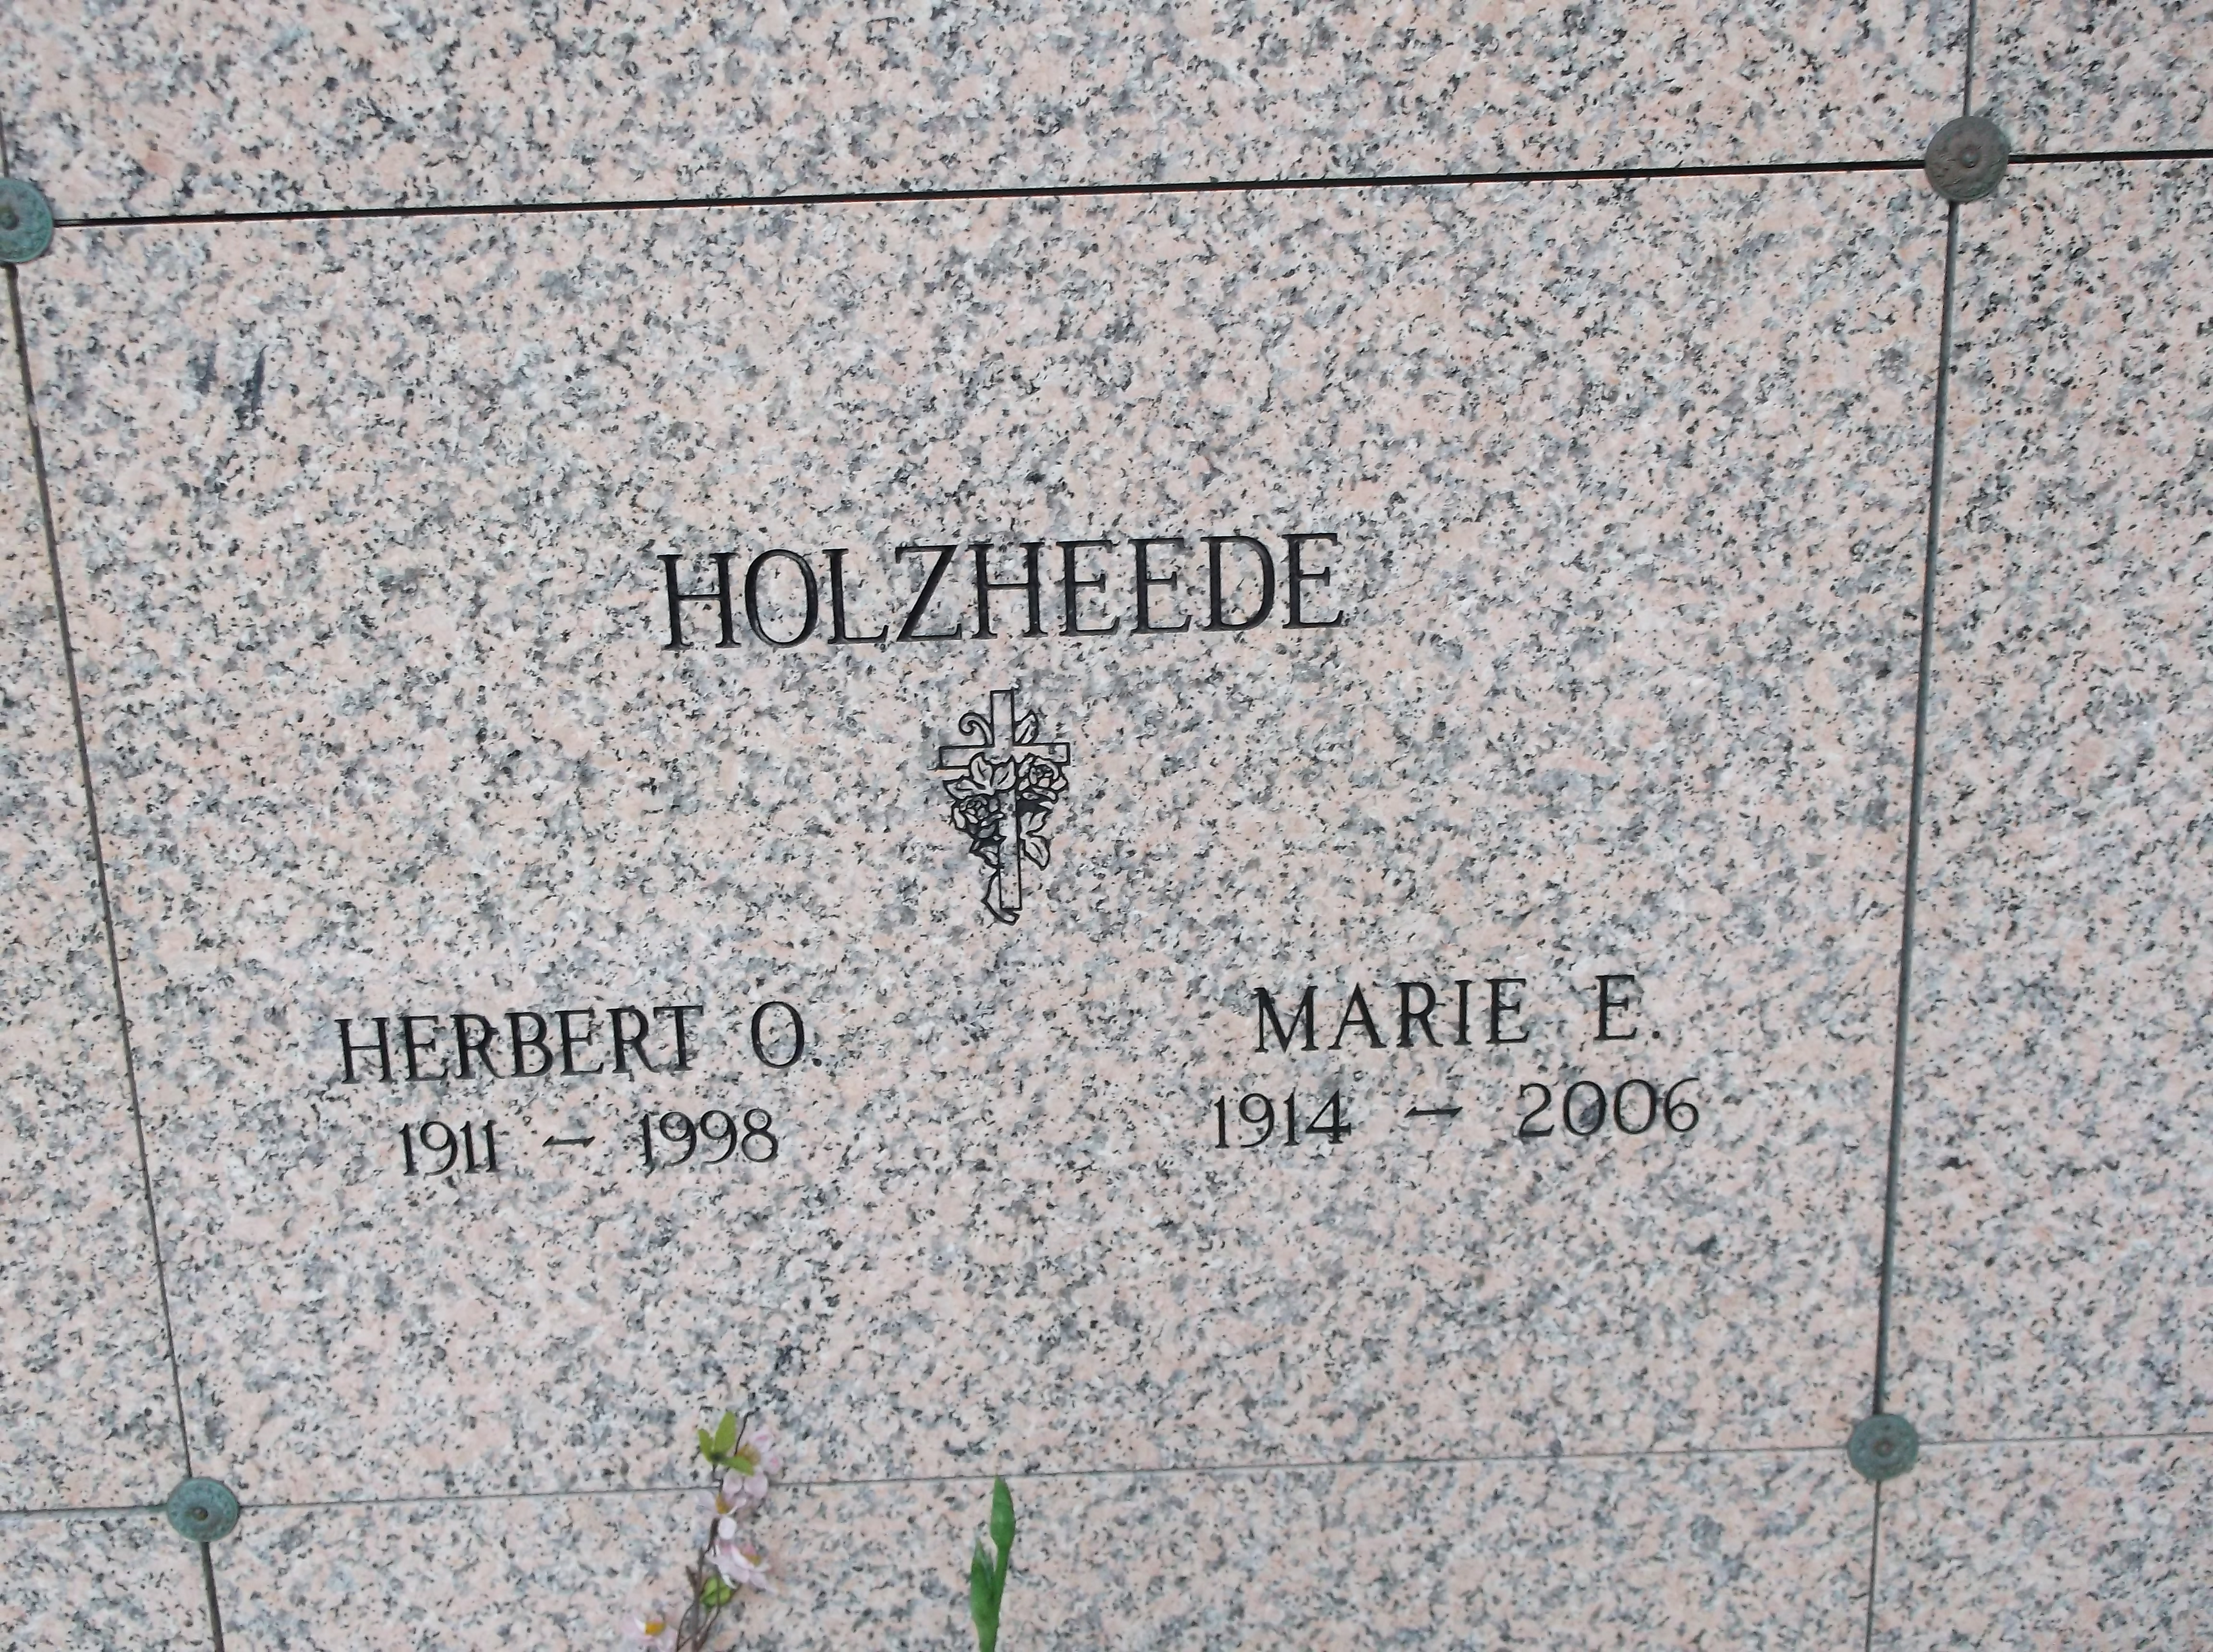 Herbert O Holzheede